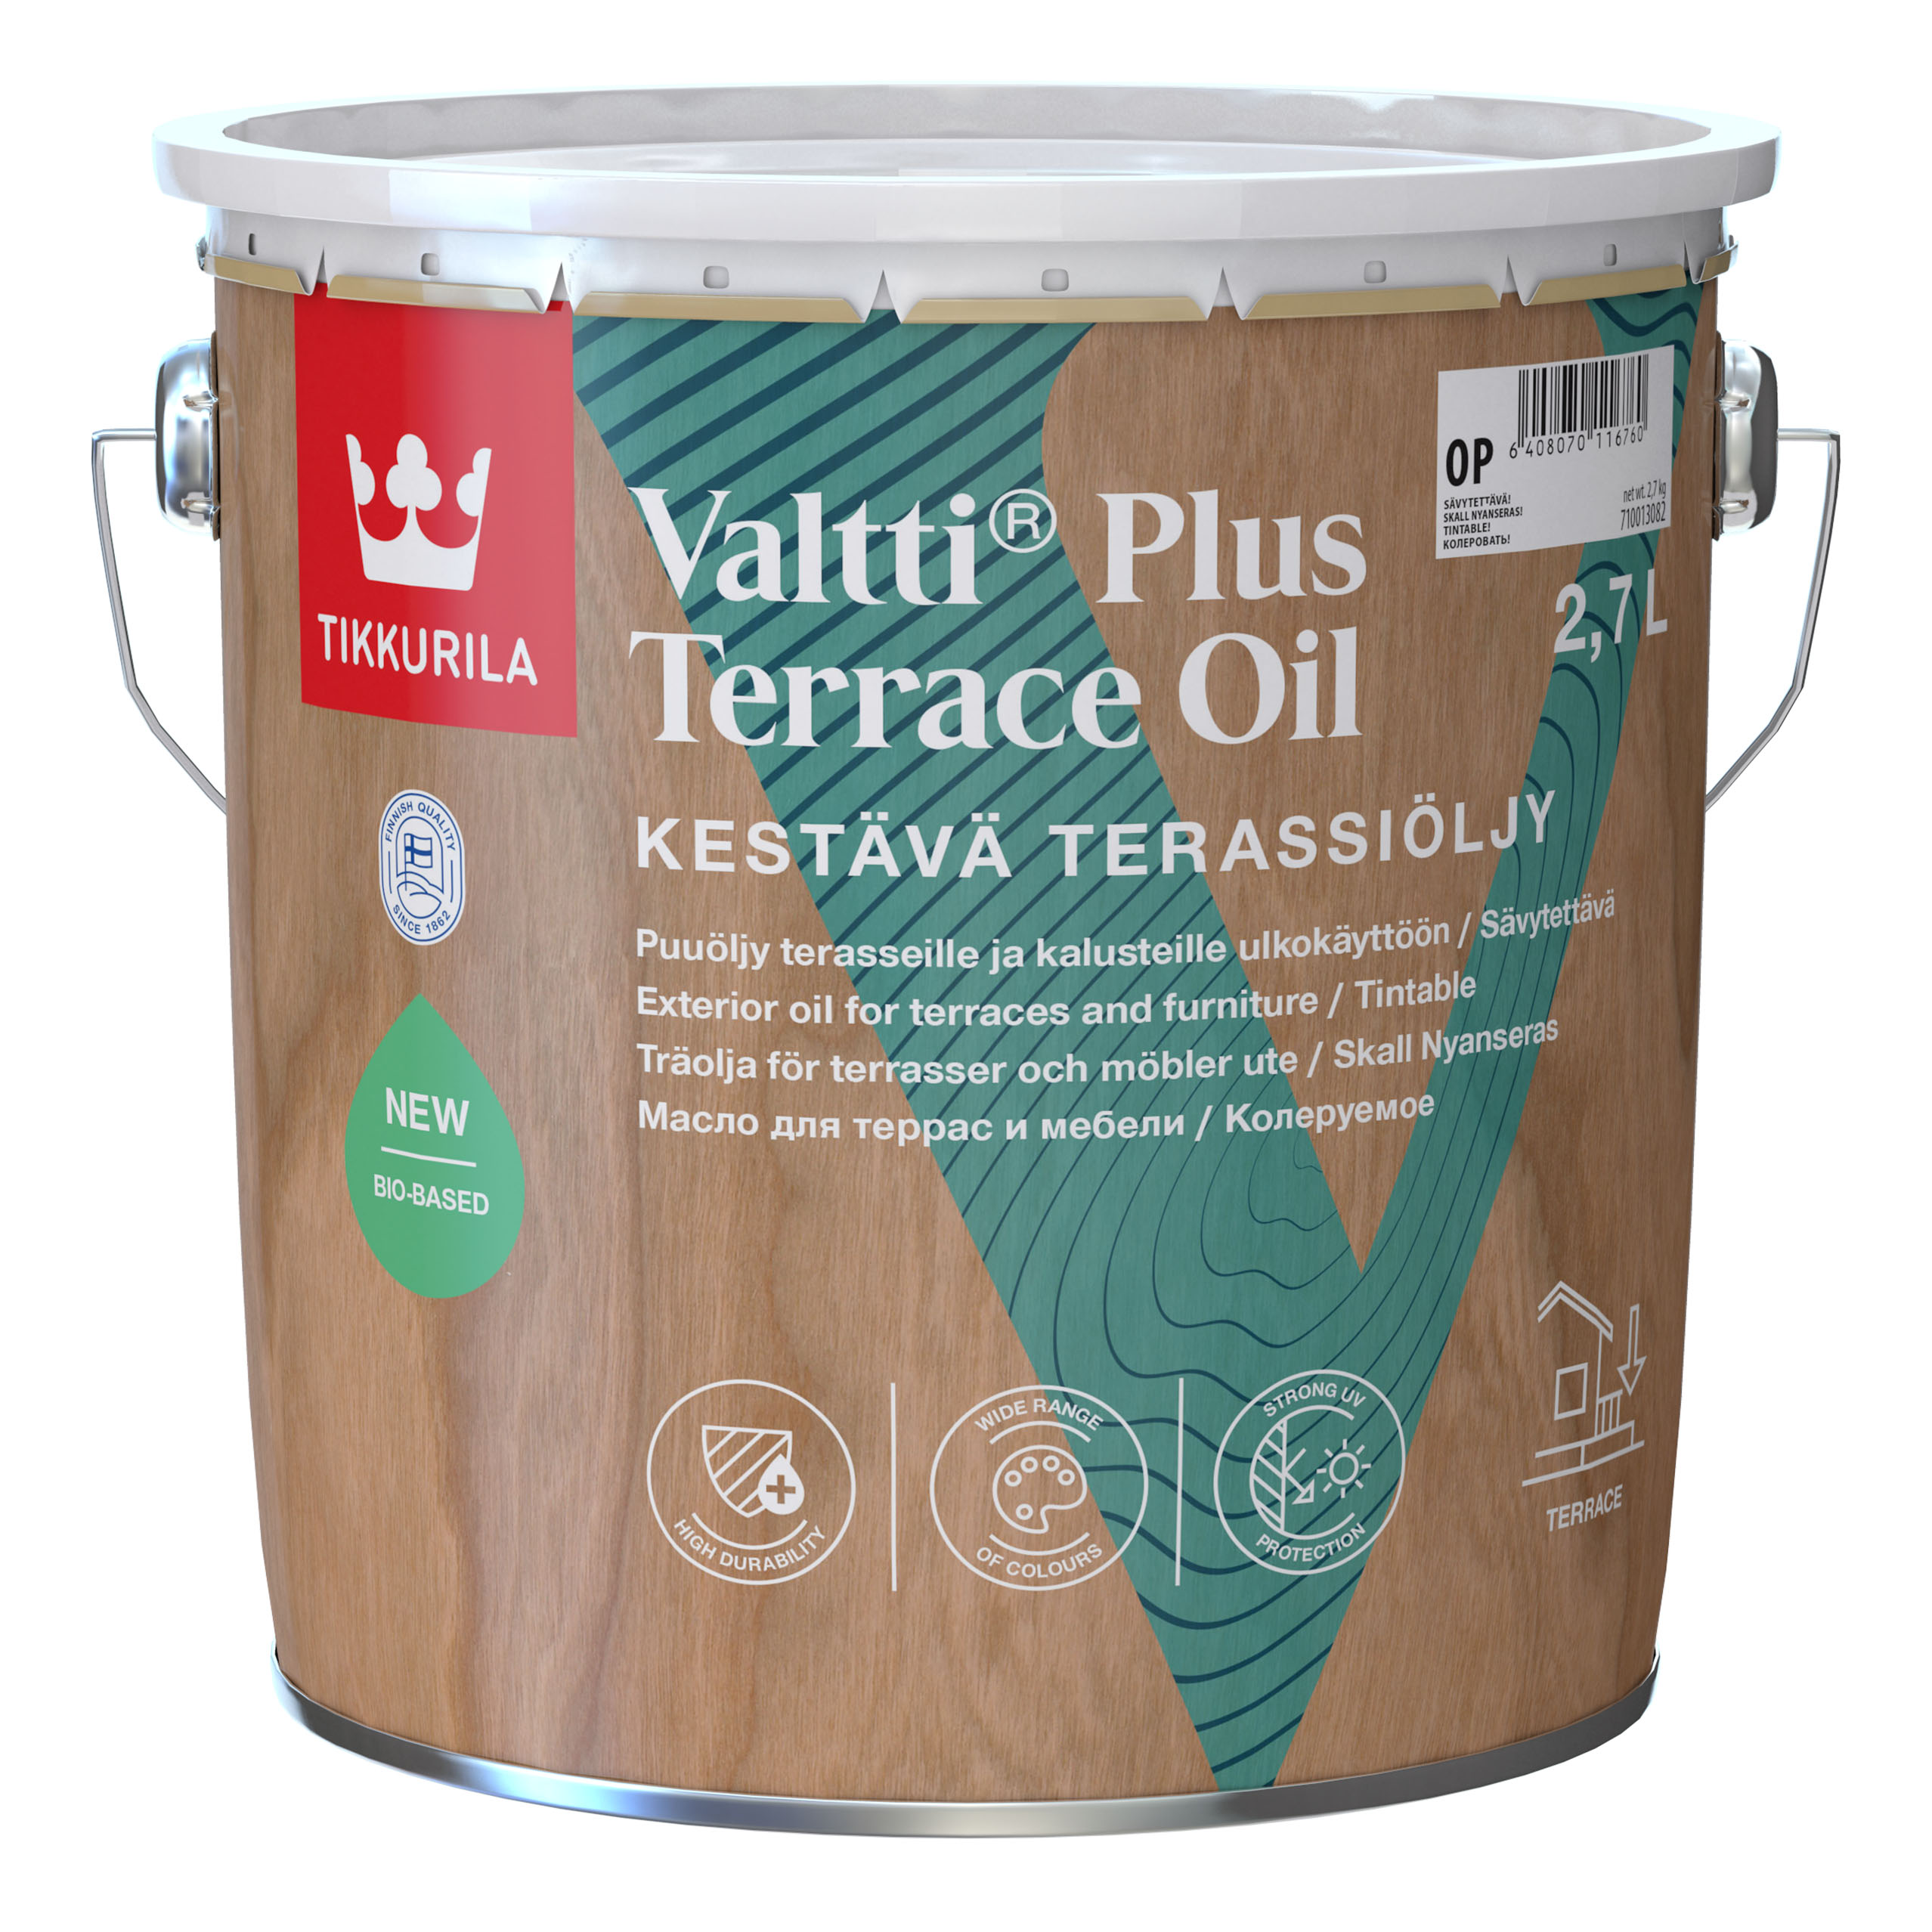 Valtti Terrace Plus Oil 2,7 л  OP